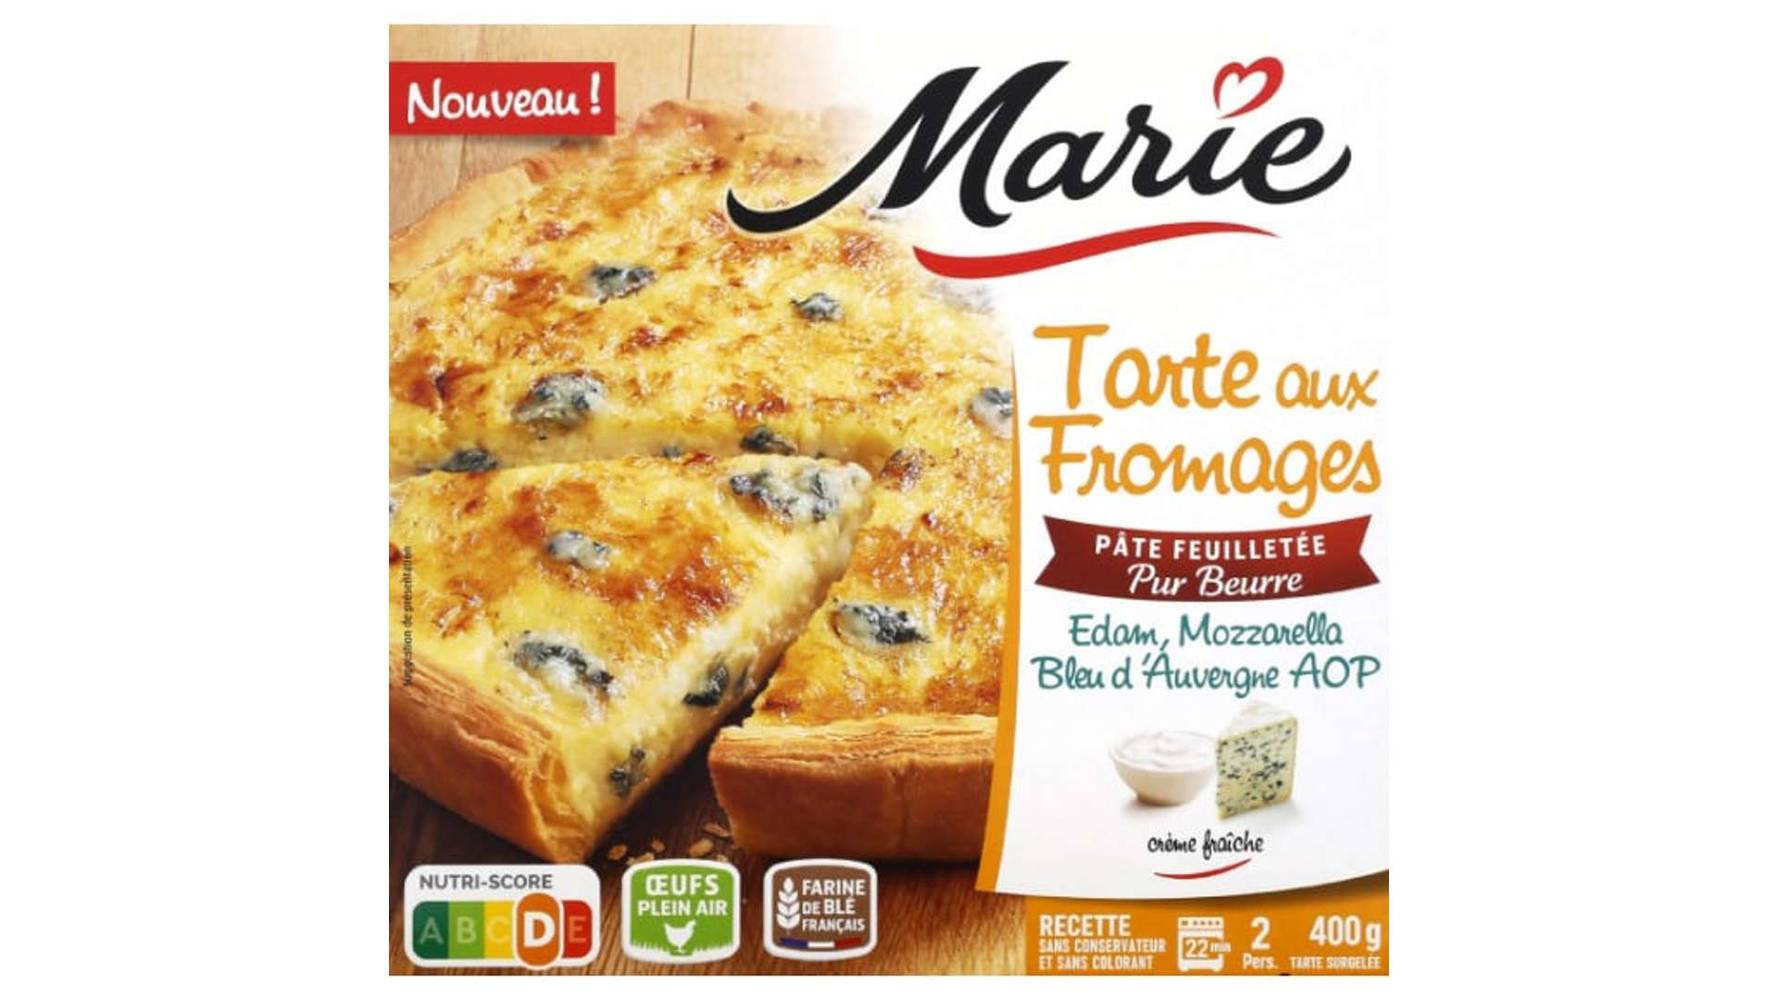 Marie Tarte aux fromages edam, mozzarella, surgelées La tarte de 400g